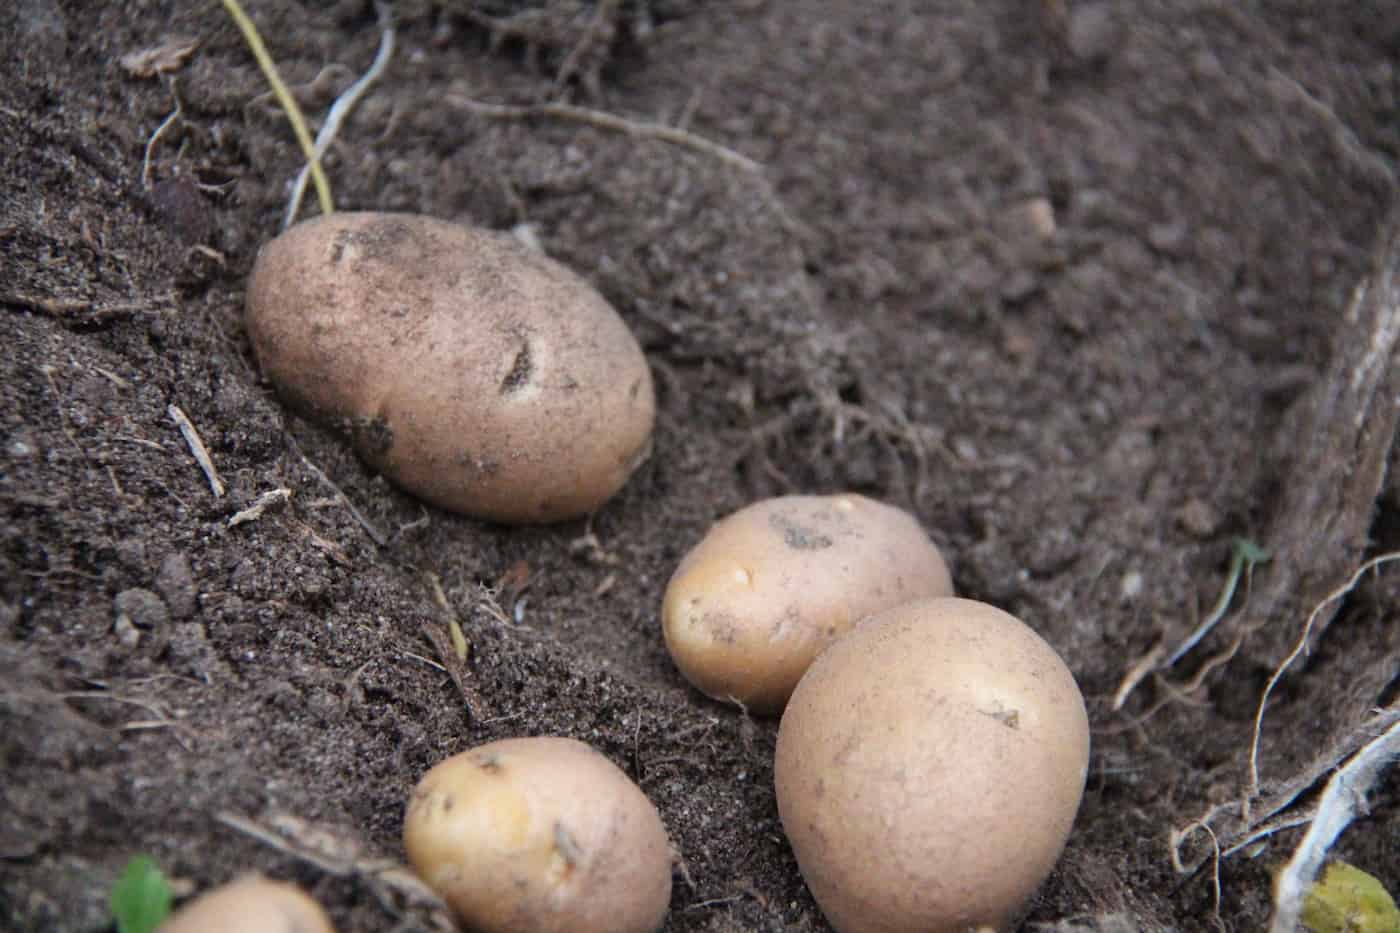 Russet potatoes in the garden